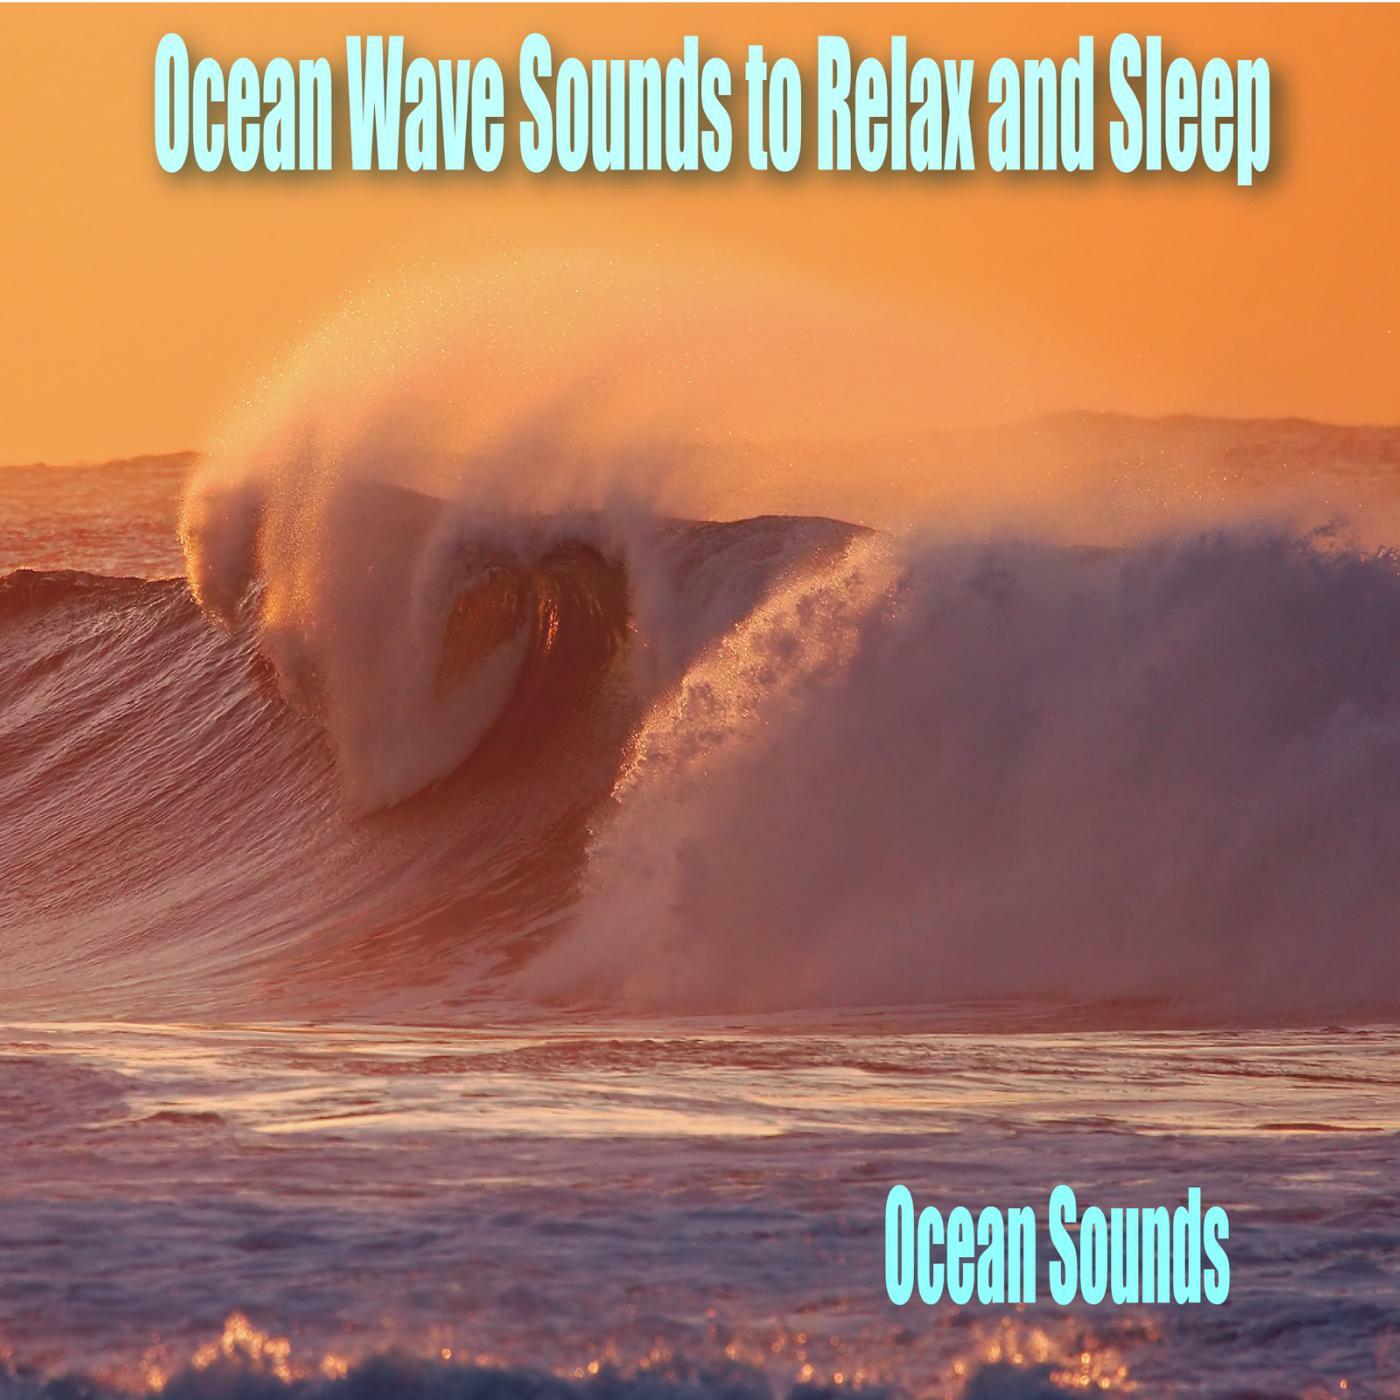 Ocean Sounds | iHeart